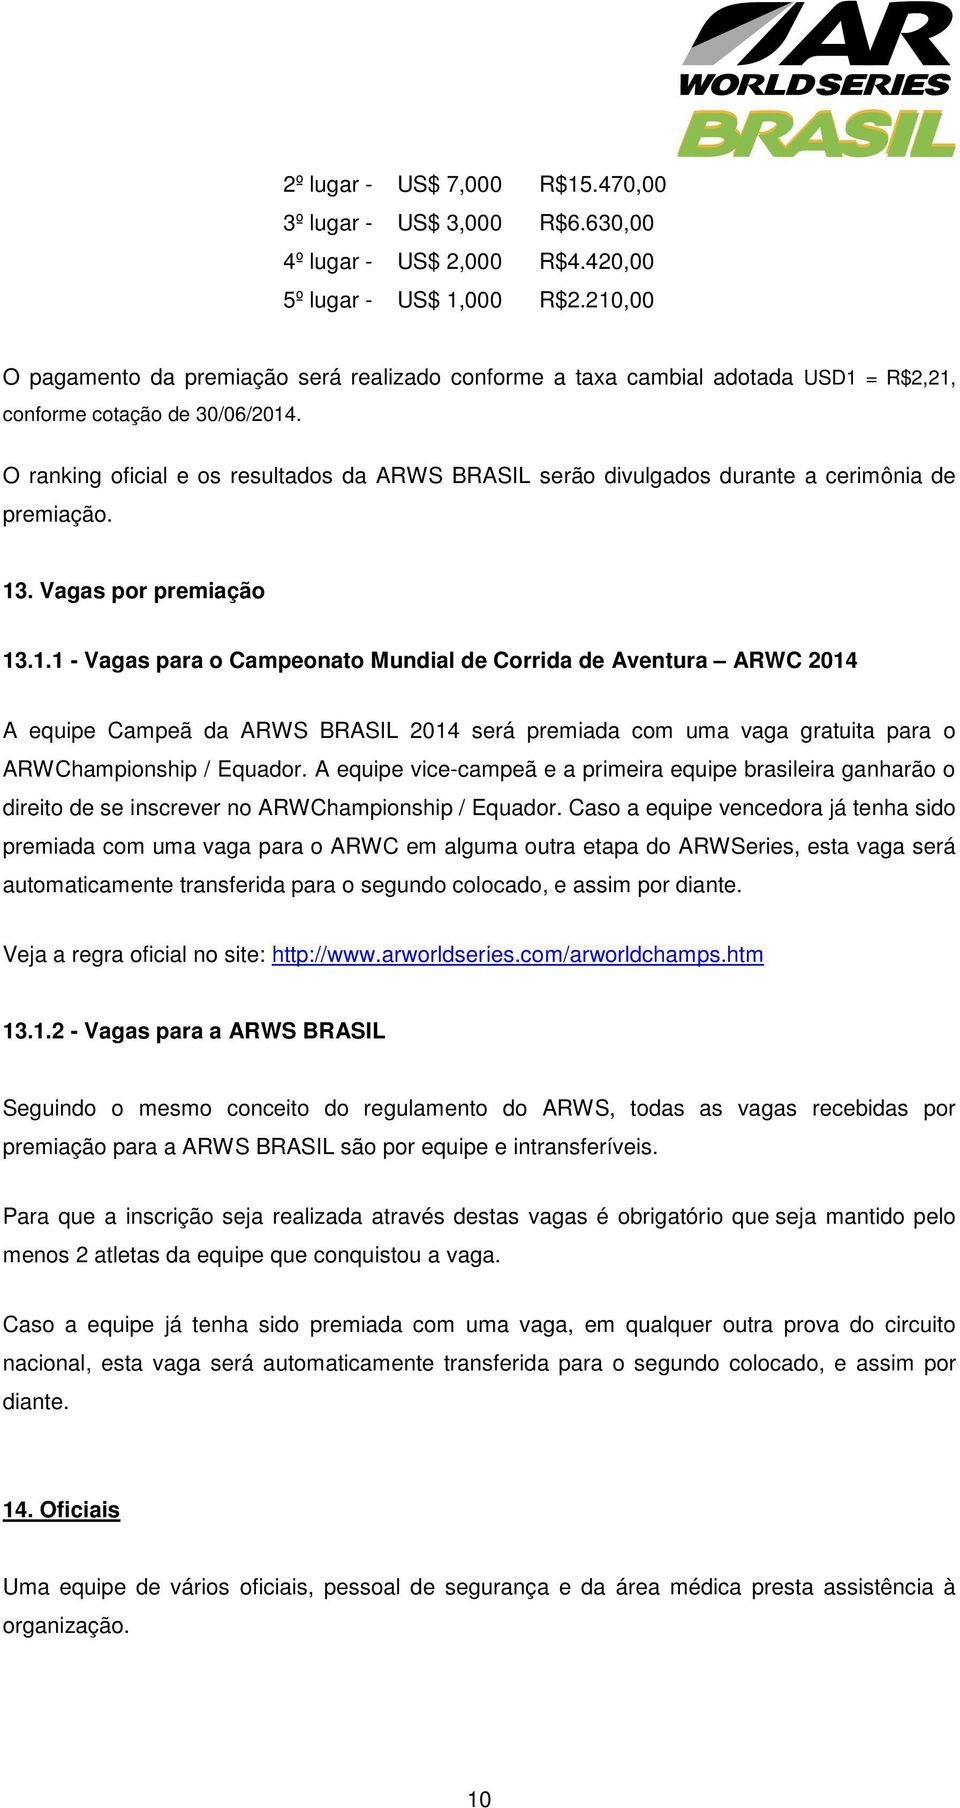 O ranking oficial e os resultados da ARWS BRASIL serão divulgados durante a cerimônia de premiação. 13